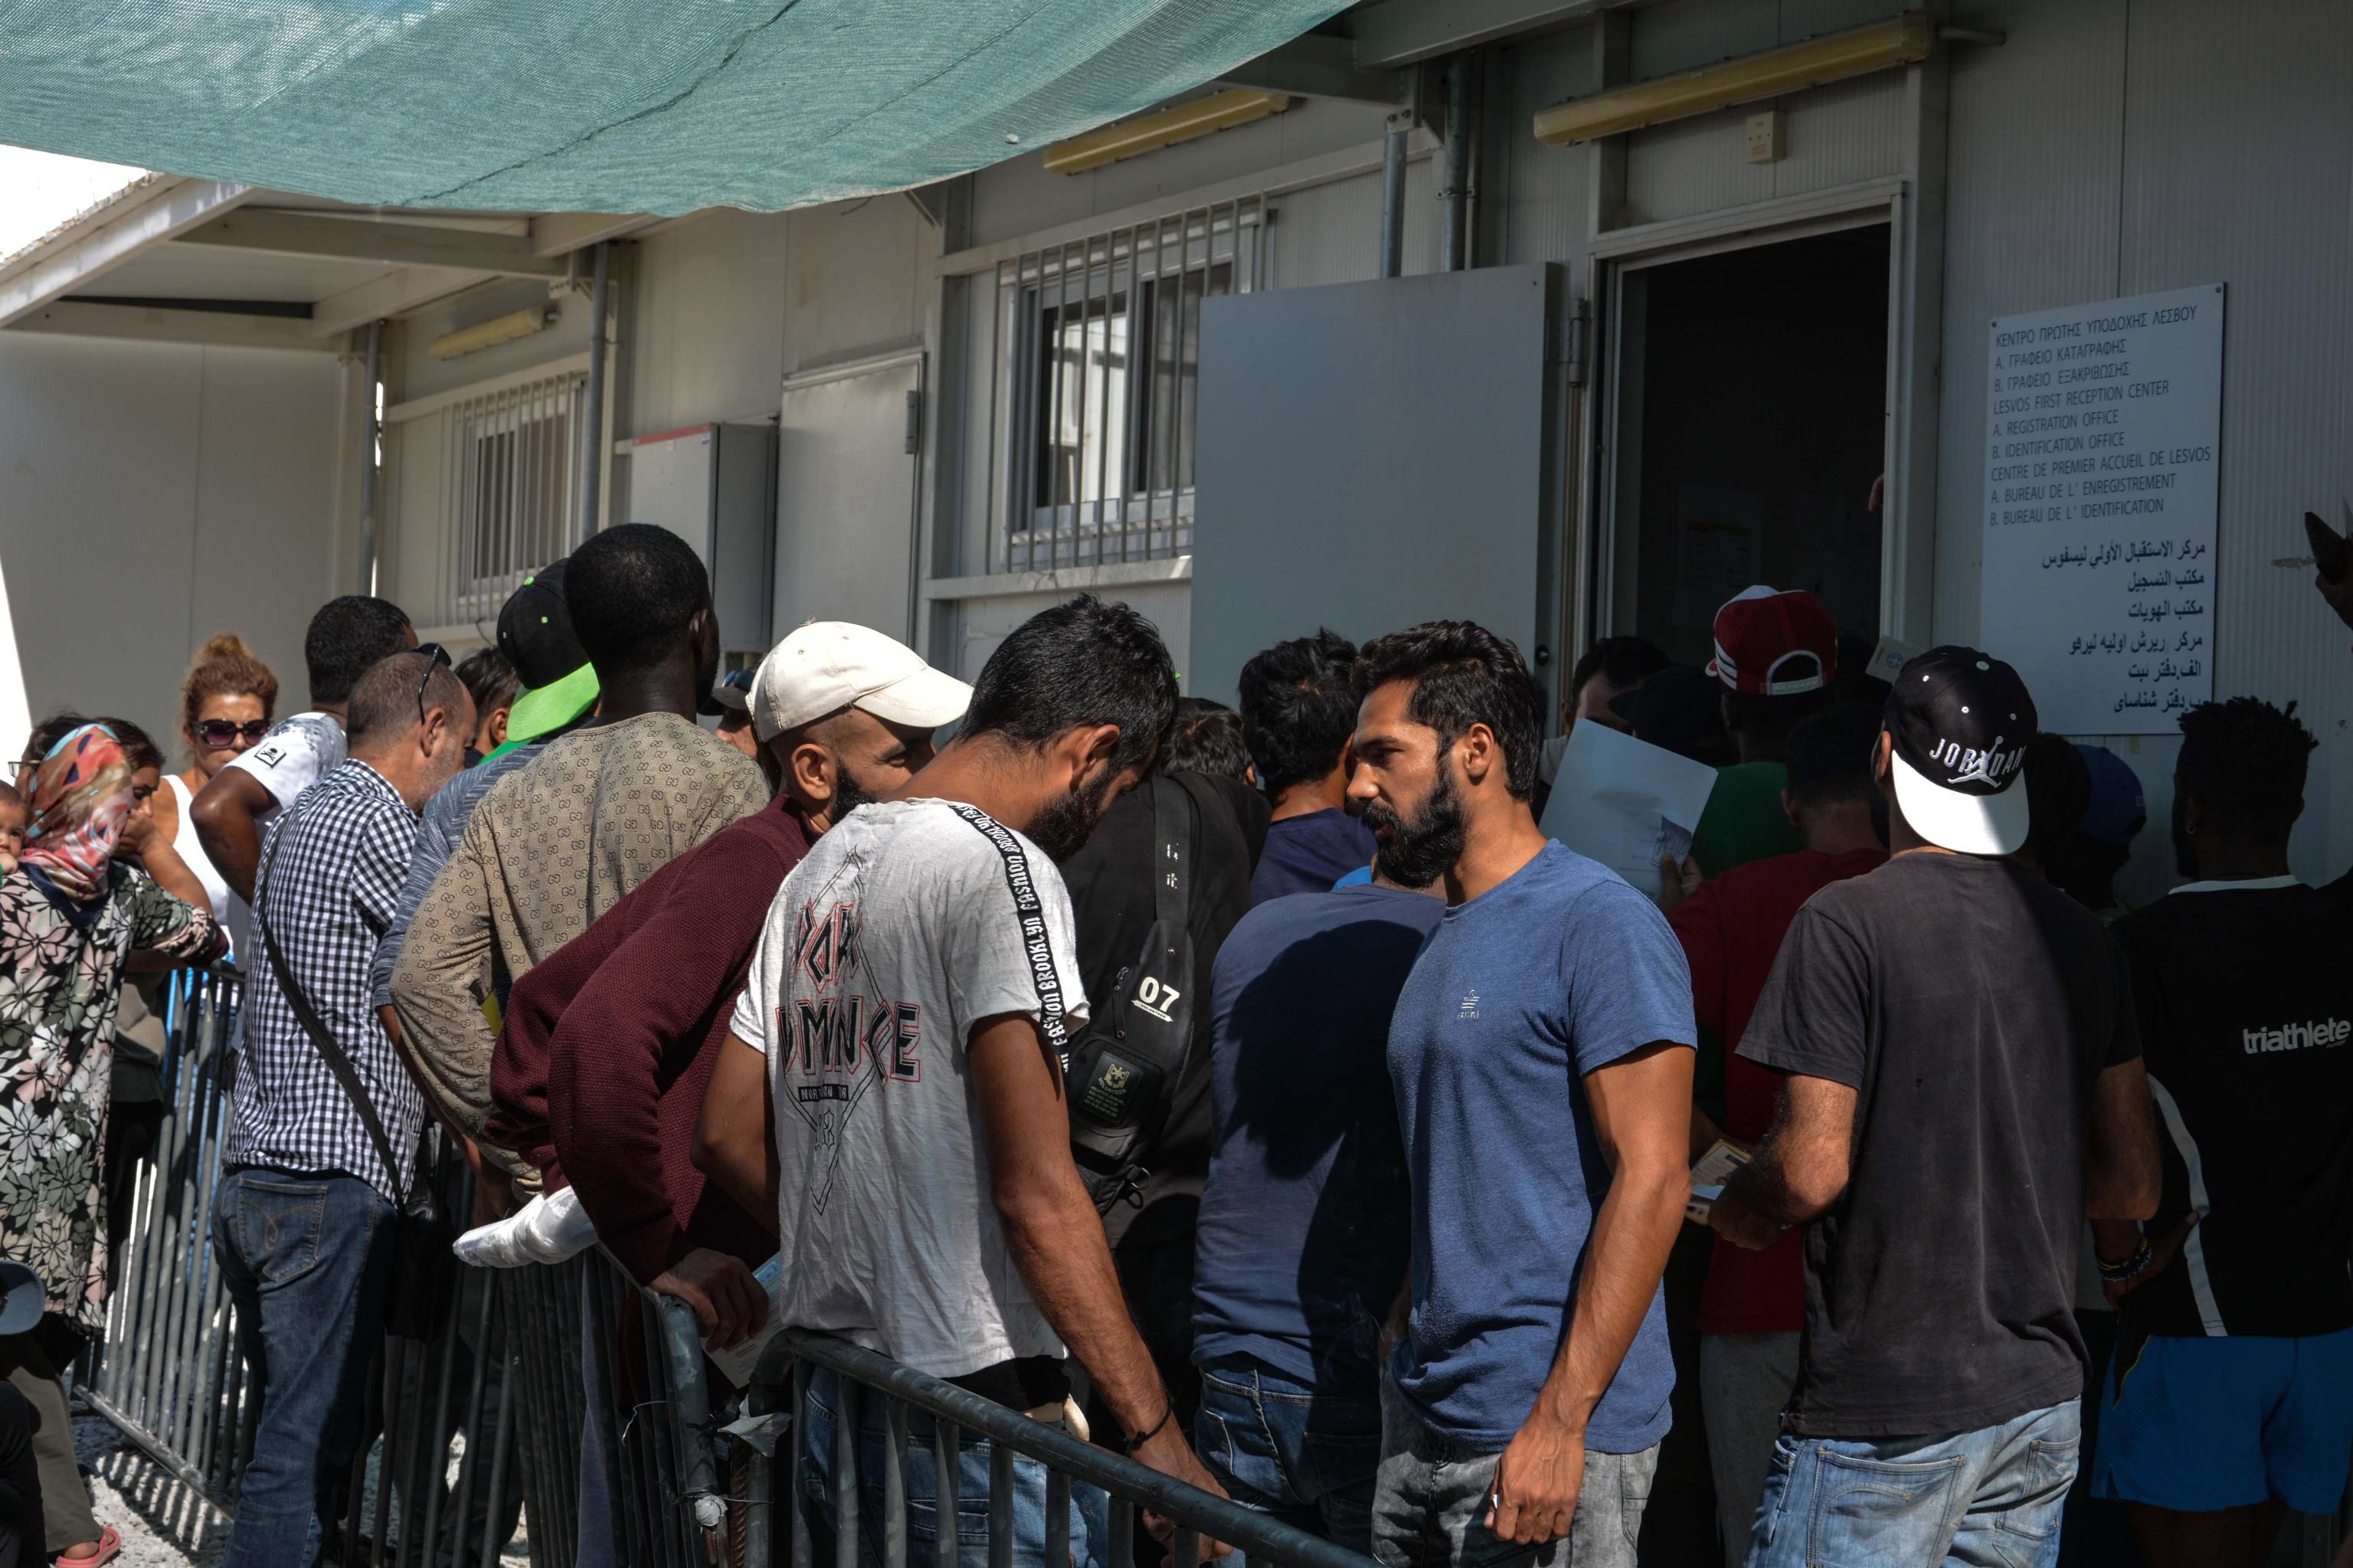 Rifugiati attendono di essere registrati nel centro per richiedenti asilo